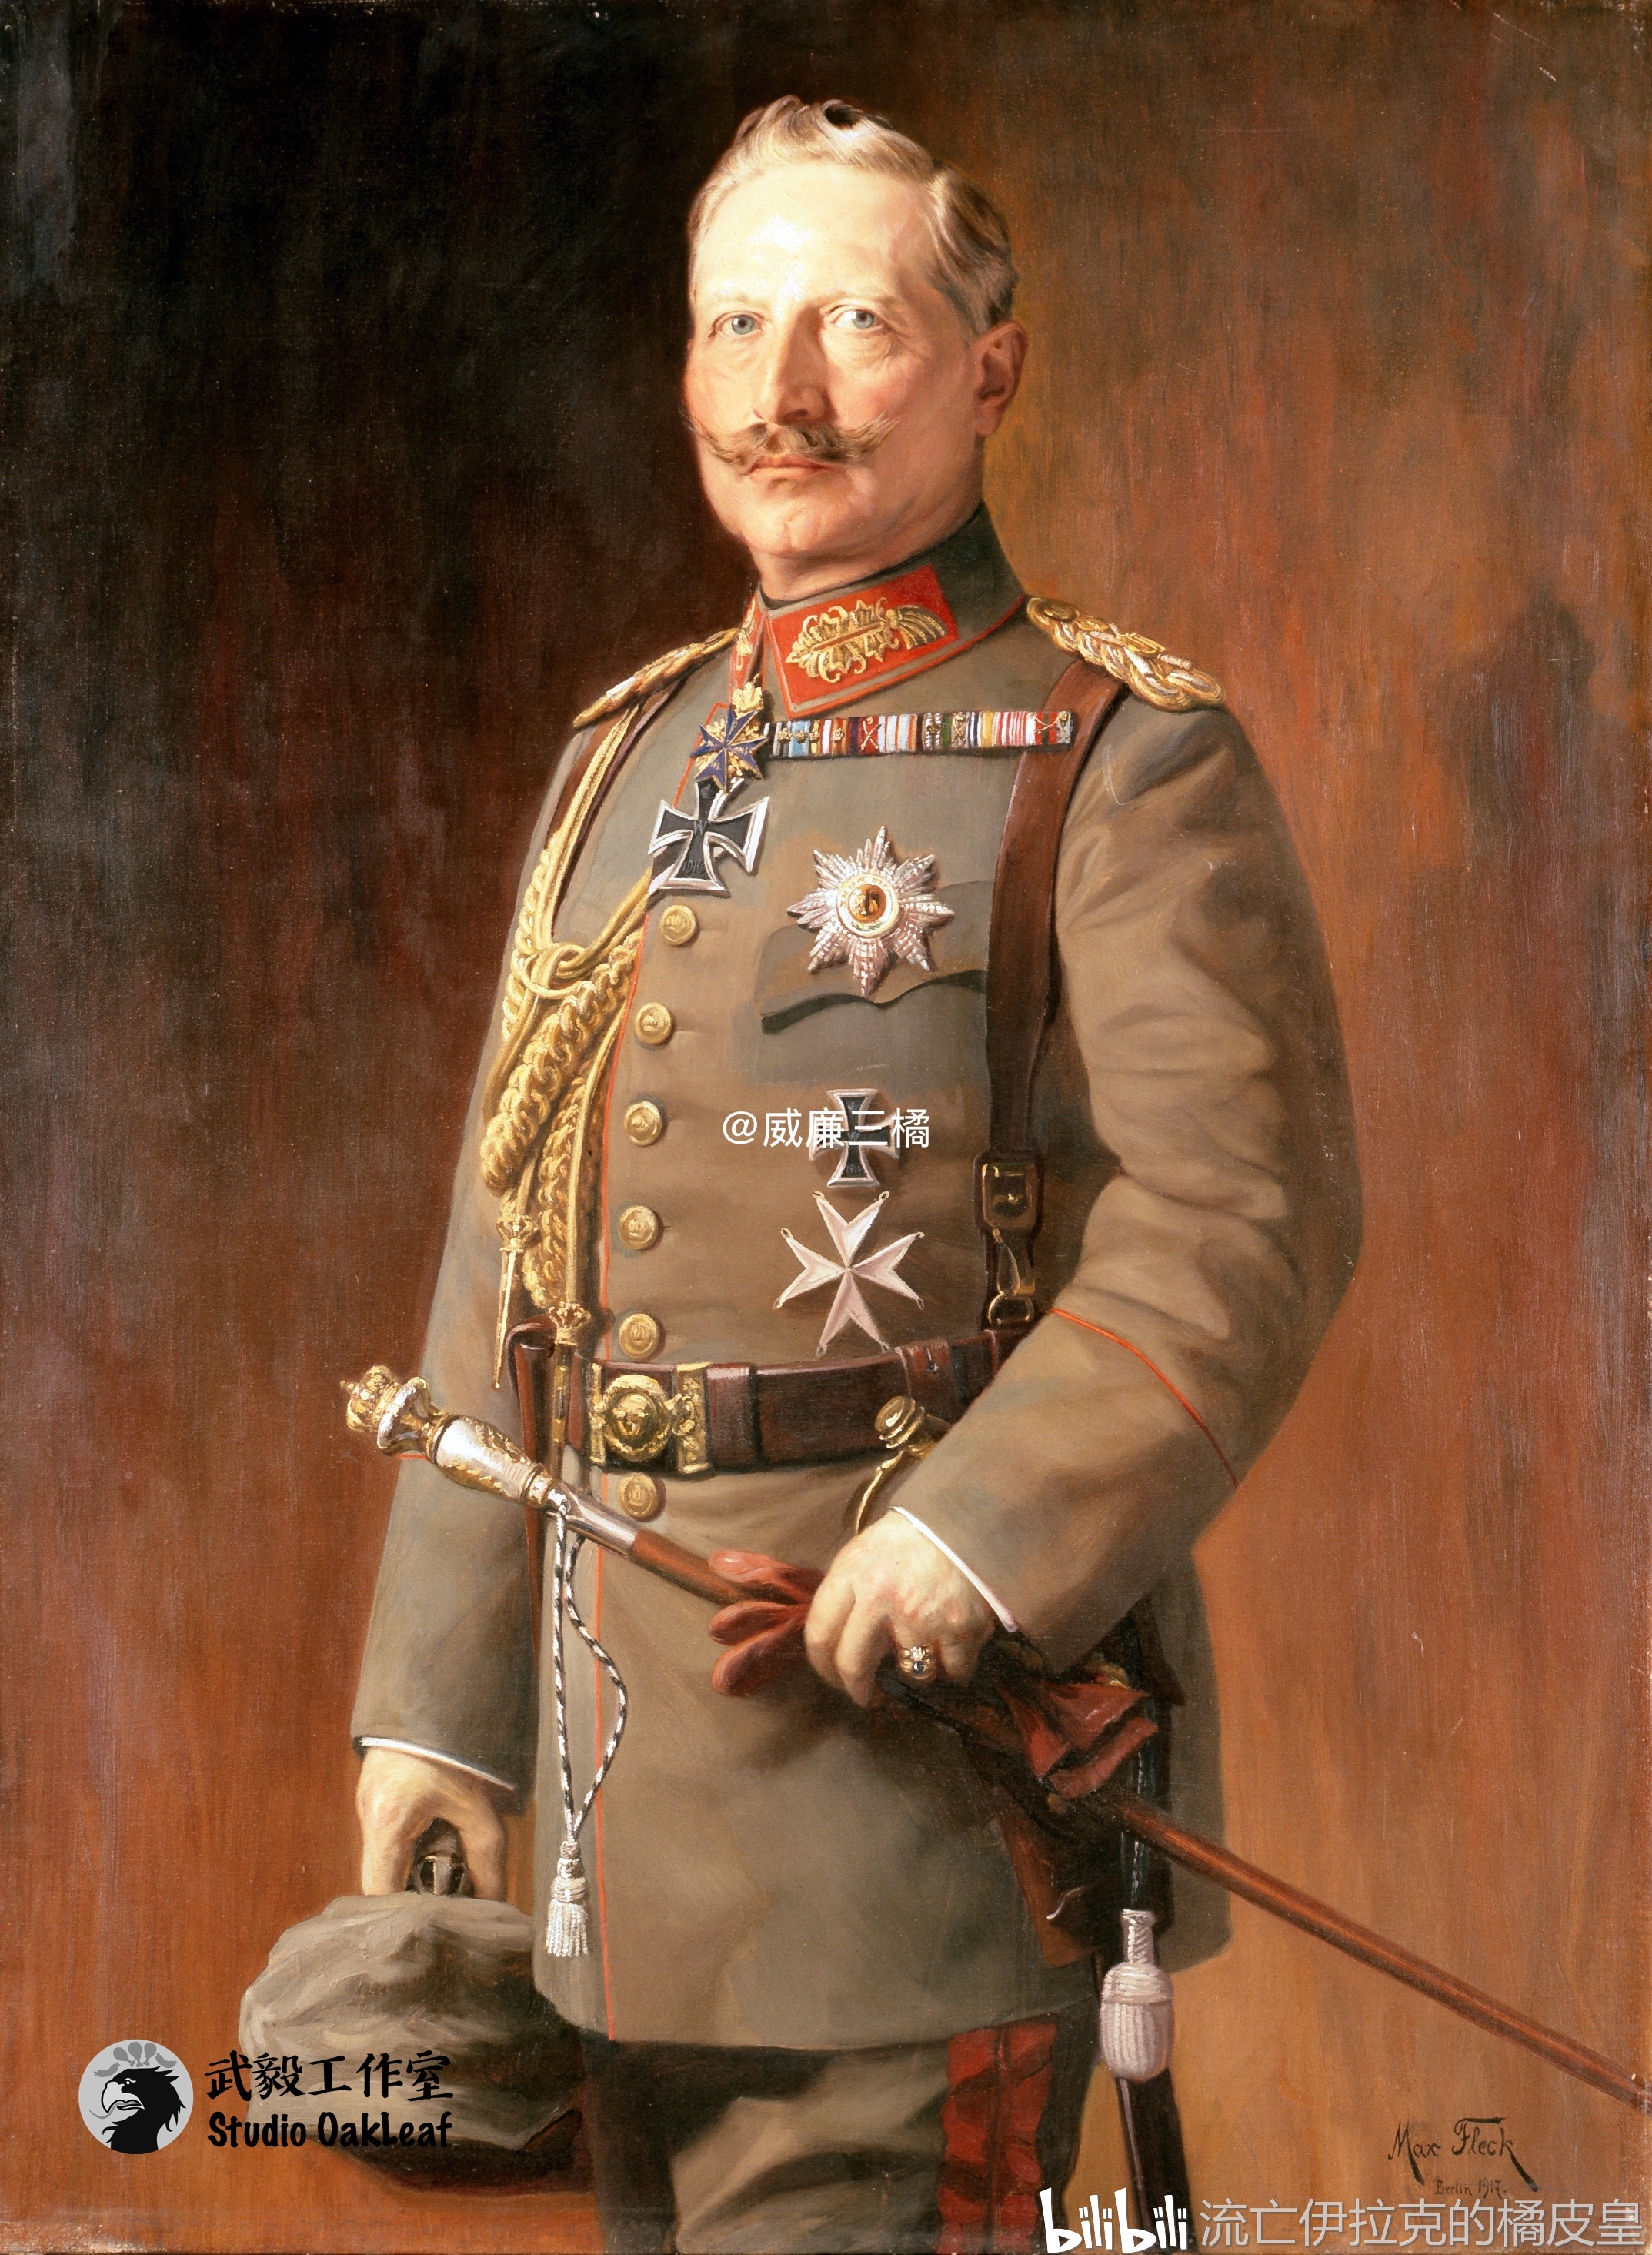 德皇威廉二世为不遵守条例规定的军官之典范,图中他穿着的m1910式军服